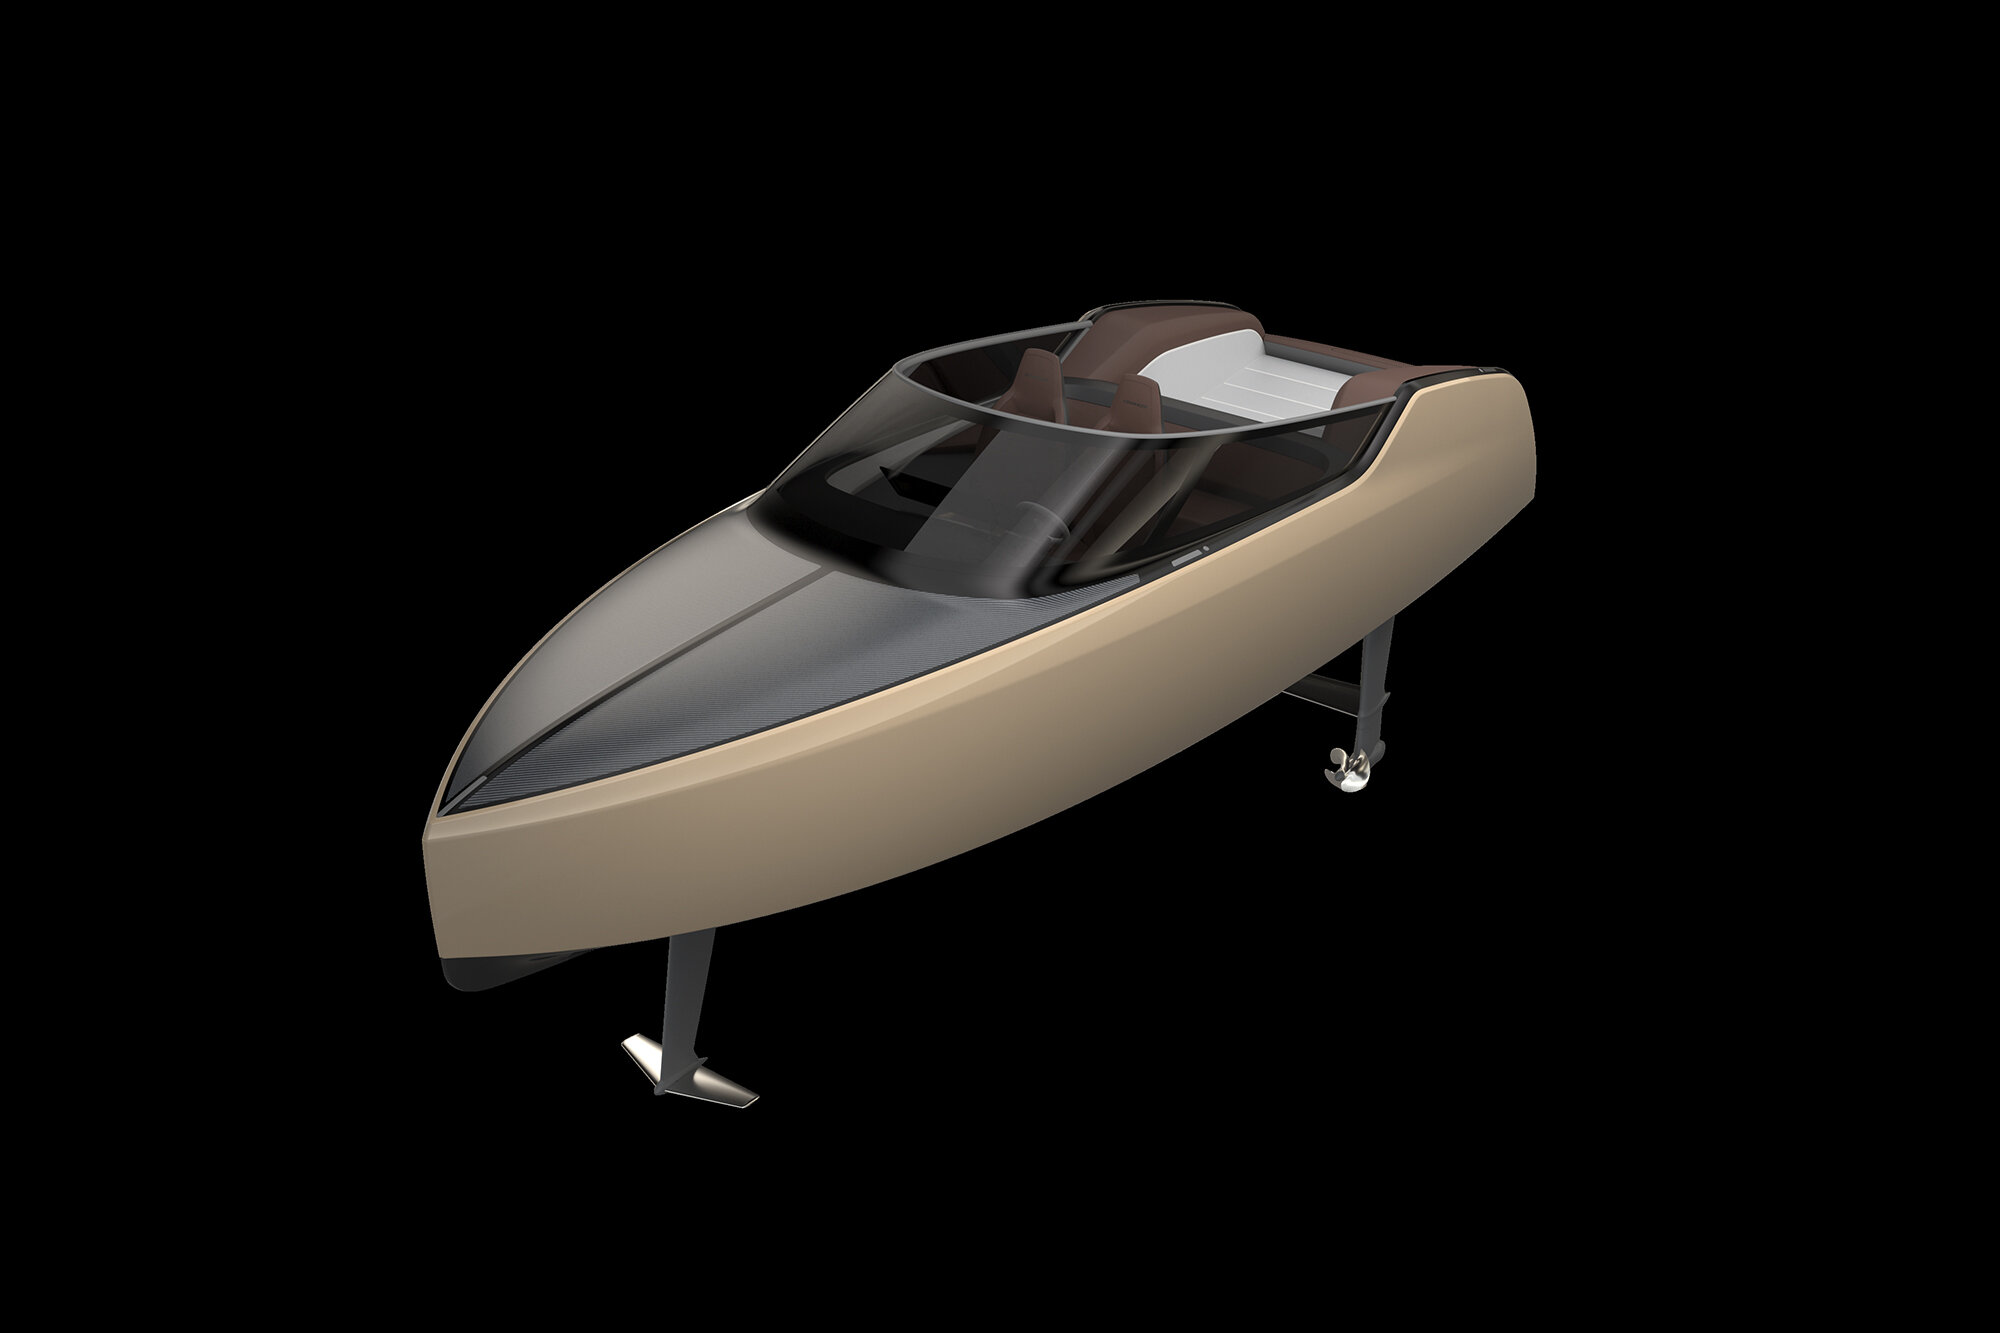 Clean, premium design of the zero-emission powerboat Edorado 8S